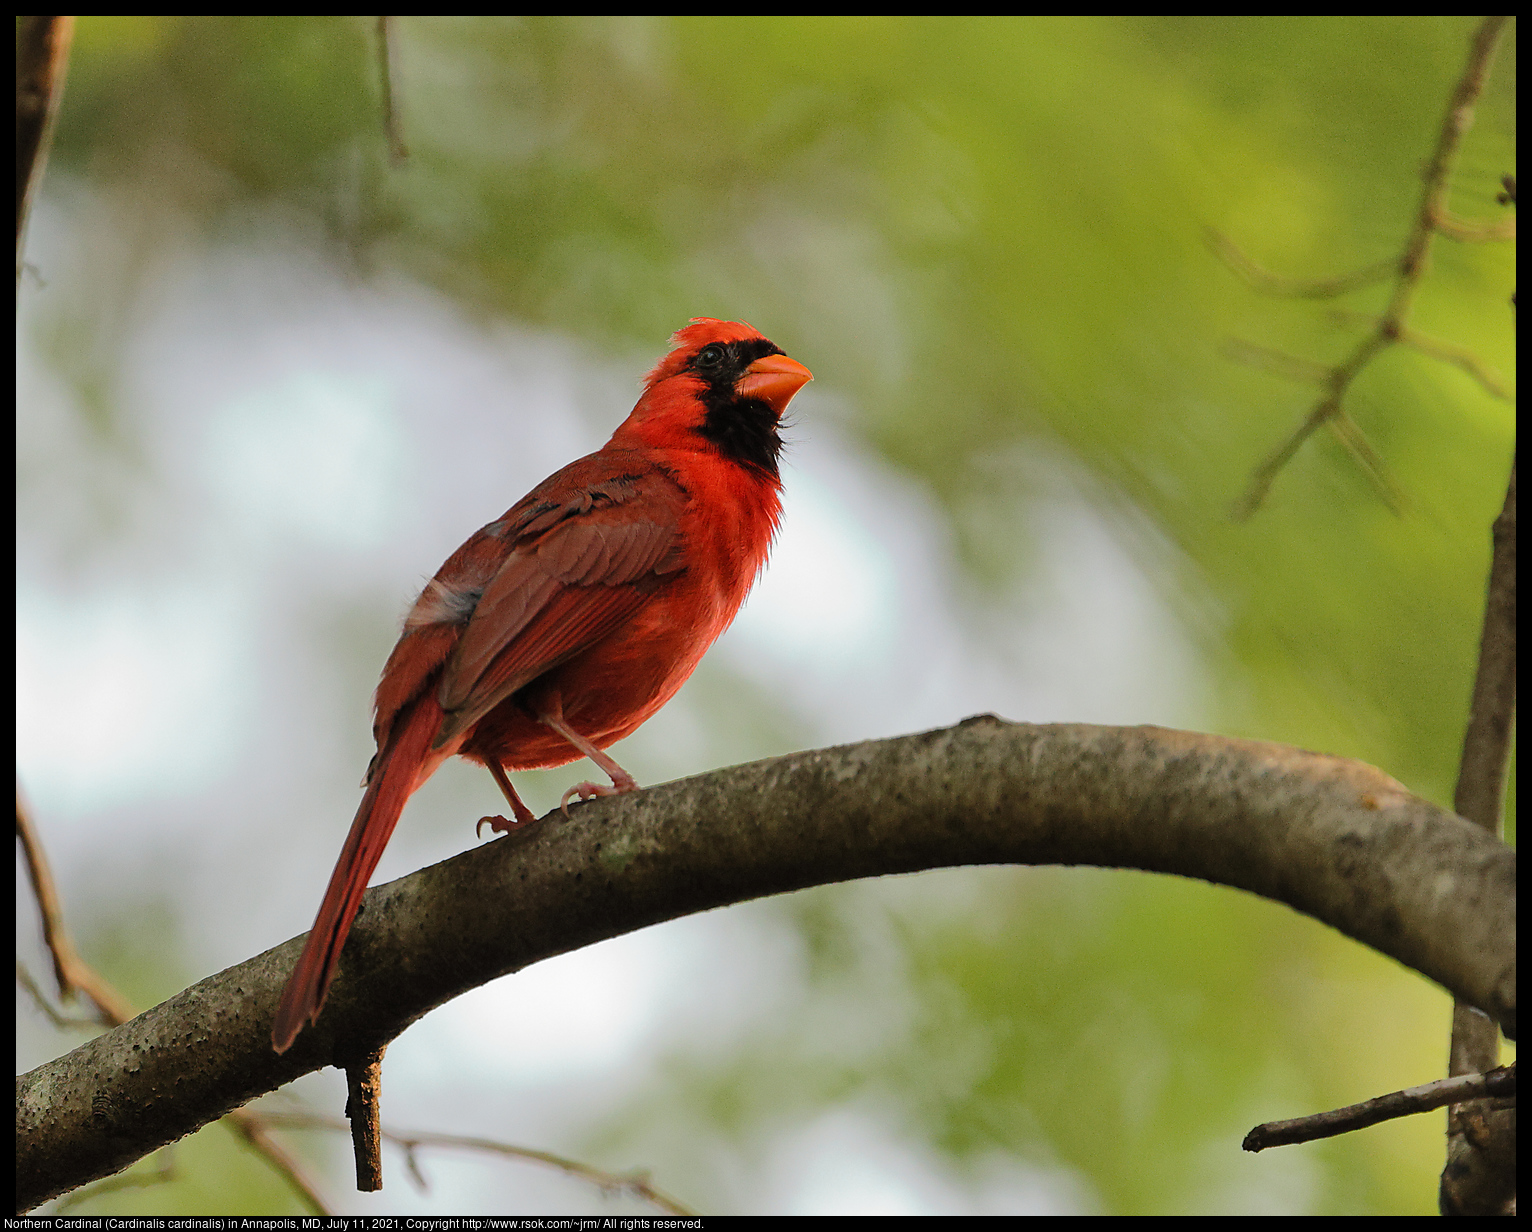 Northern Cardinal (Cardinalis cardinalis) in Annapolis, MD, July 11, 2021